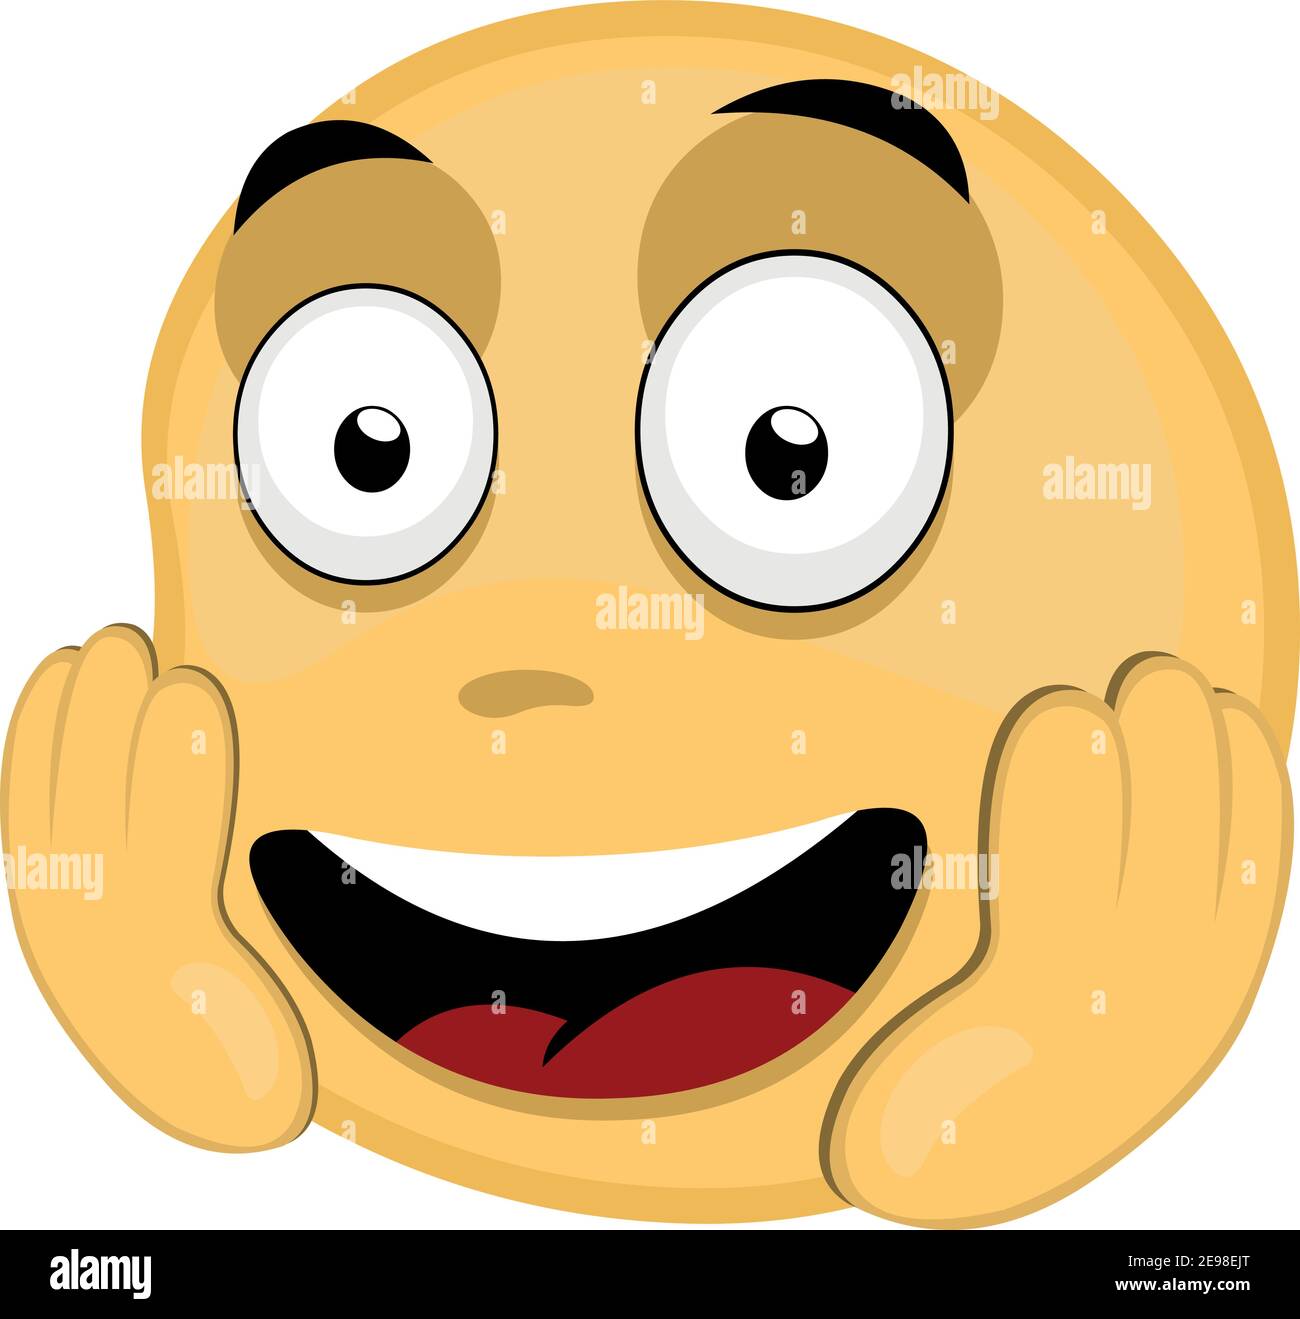 Vector illustration of a happy emoticon Stock Vector